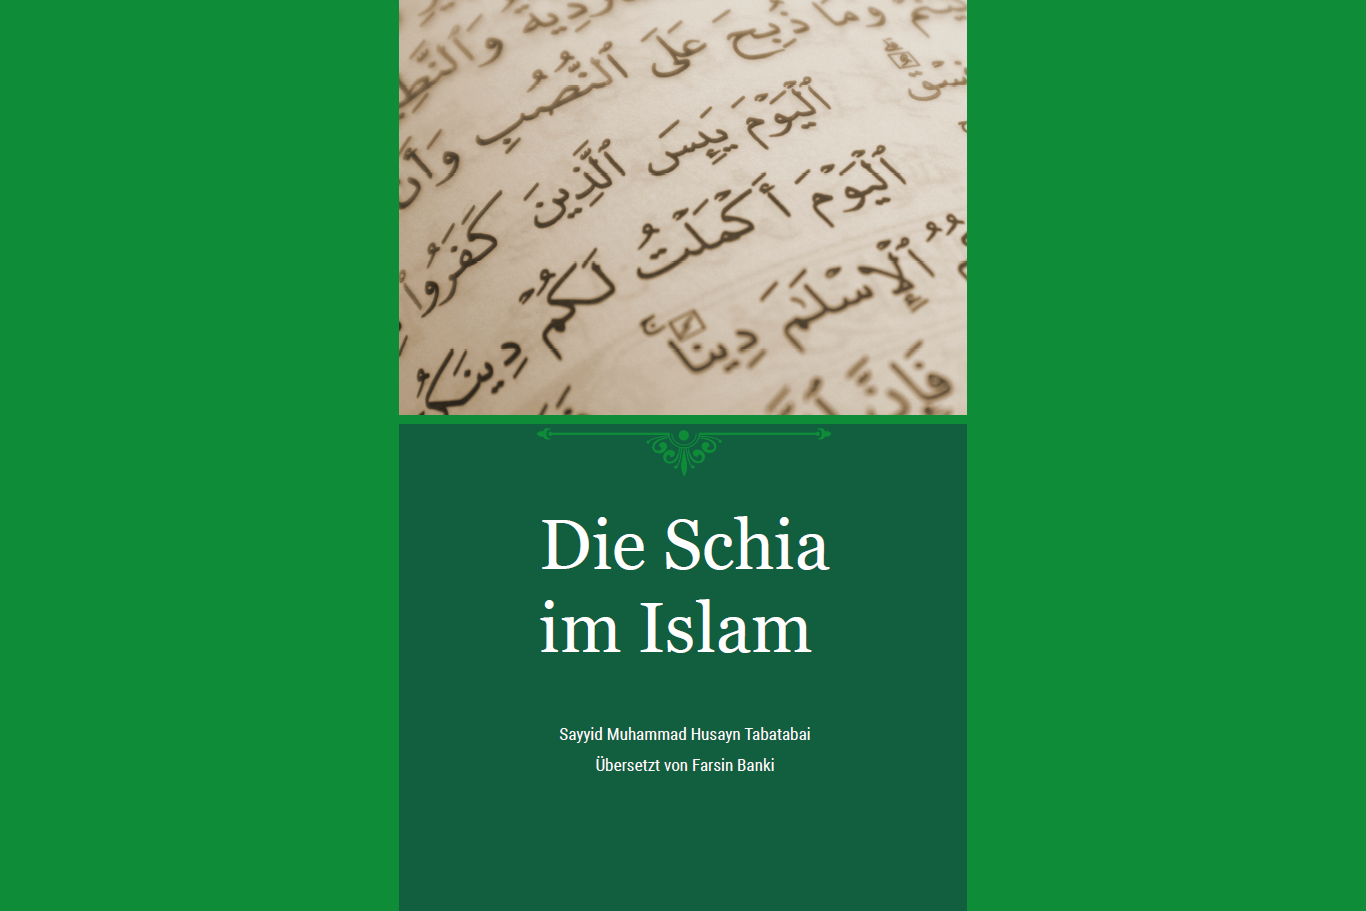 کتاب «شیعه در اسلام» به زبان آلمانی منتشر گردید